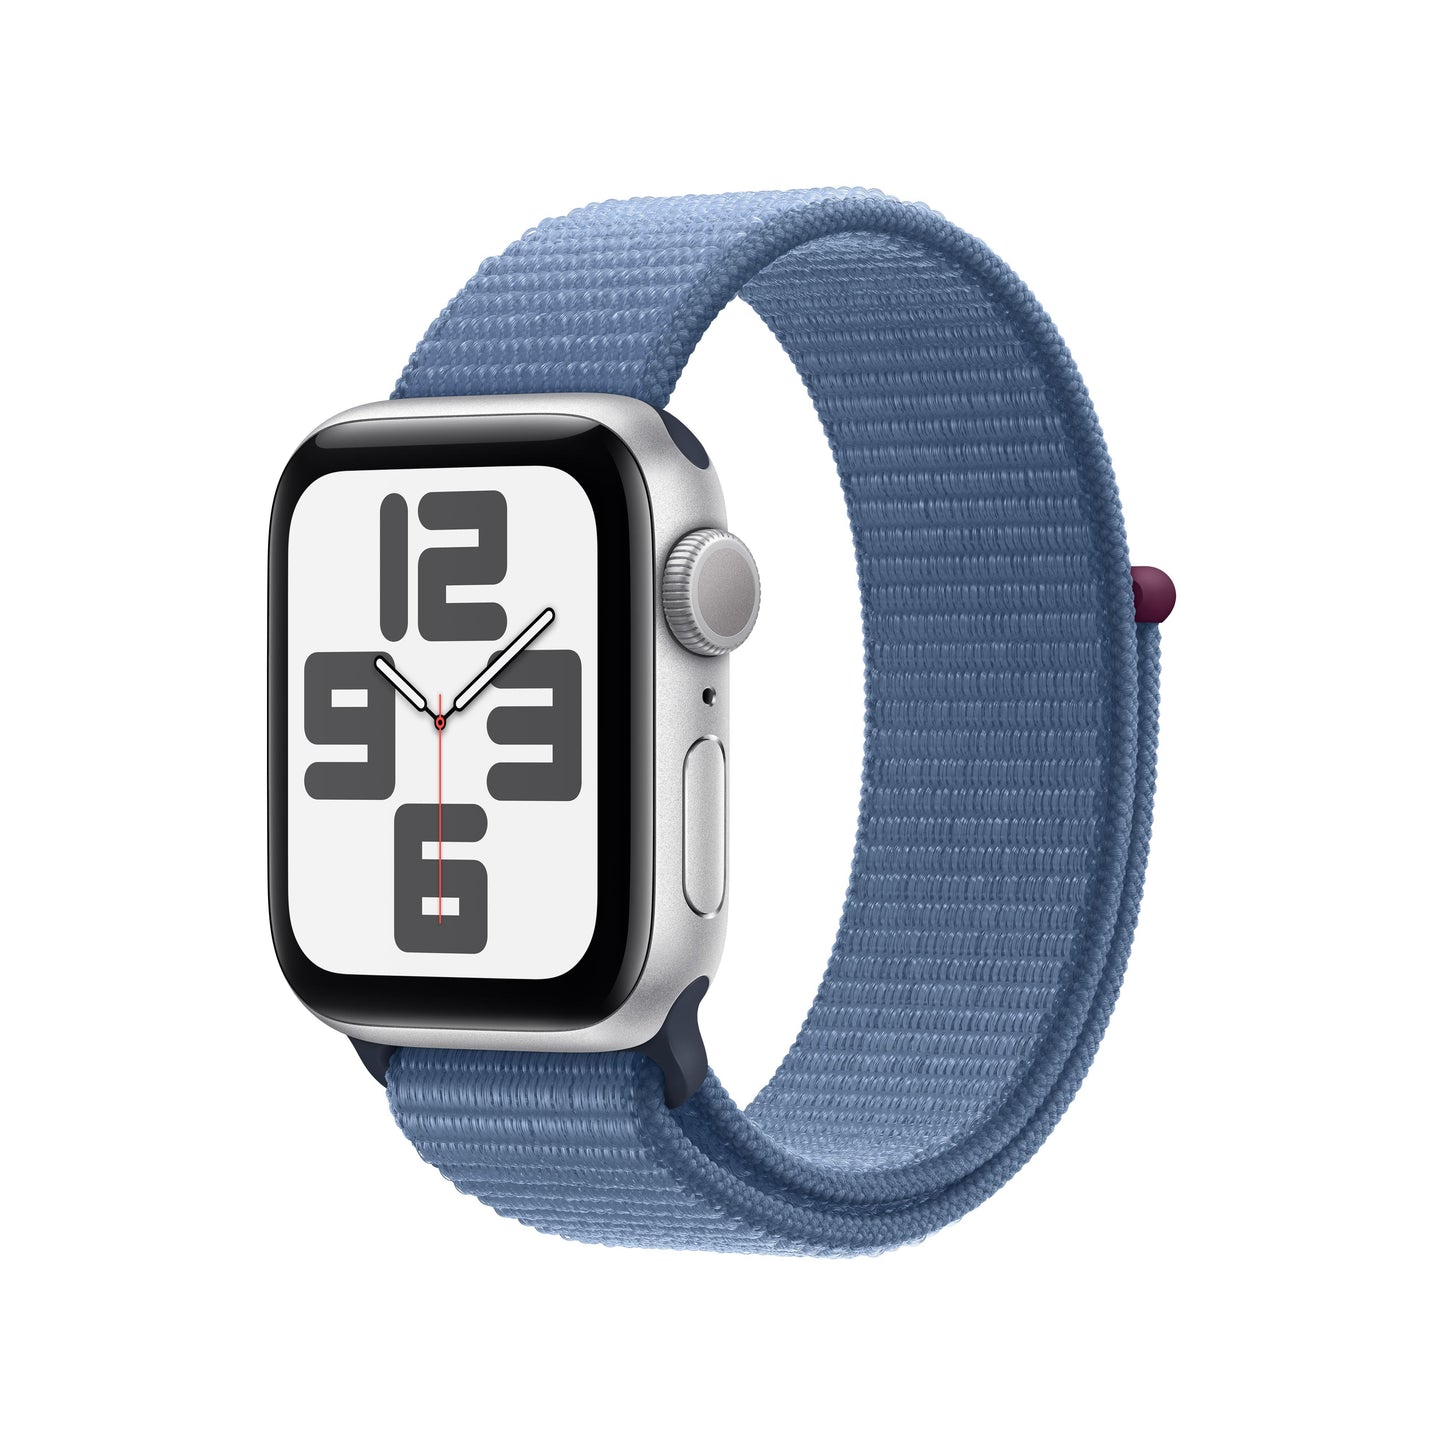 Apple Watch SE (GPS) - Caja de aluminio en plata de 40 mm - Correa Loop deportiva azul invierno